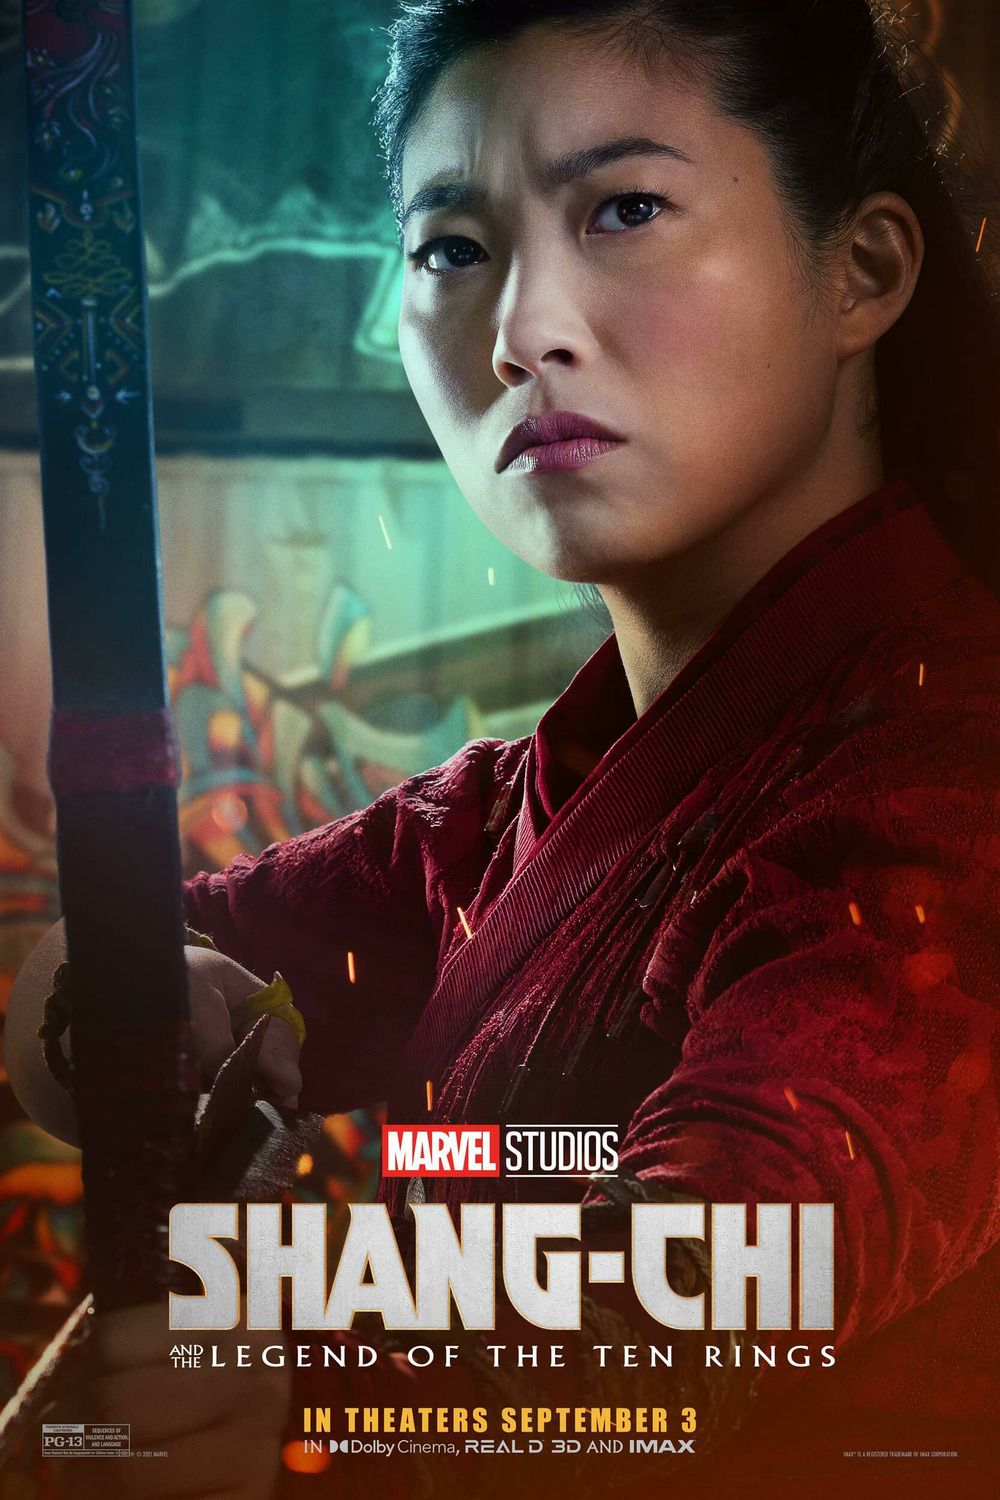 Shang Chi Character Poster Image #2